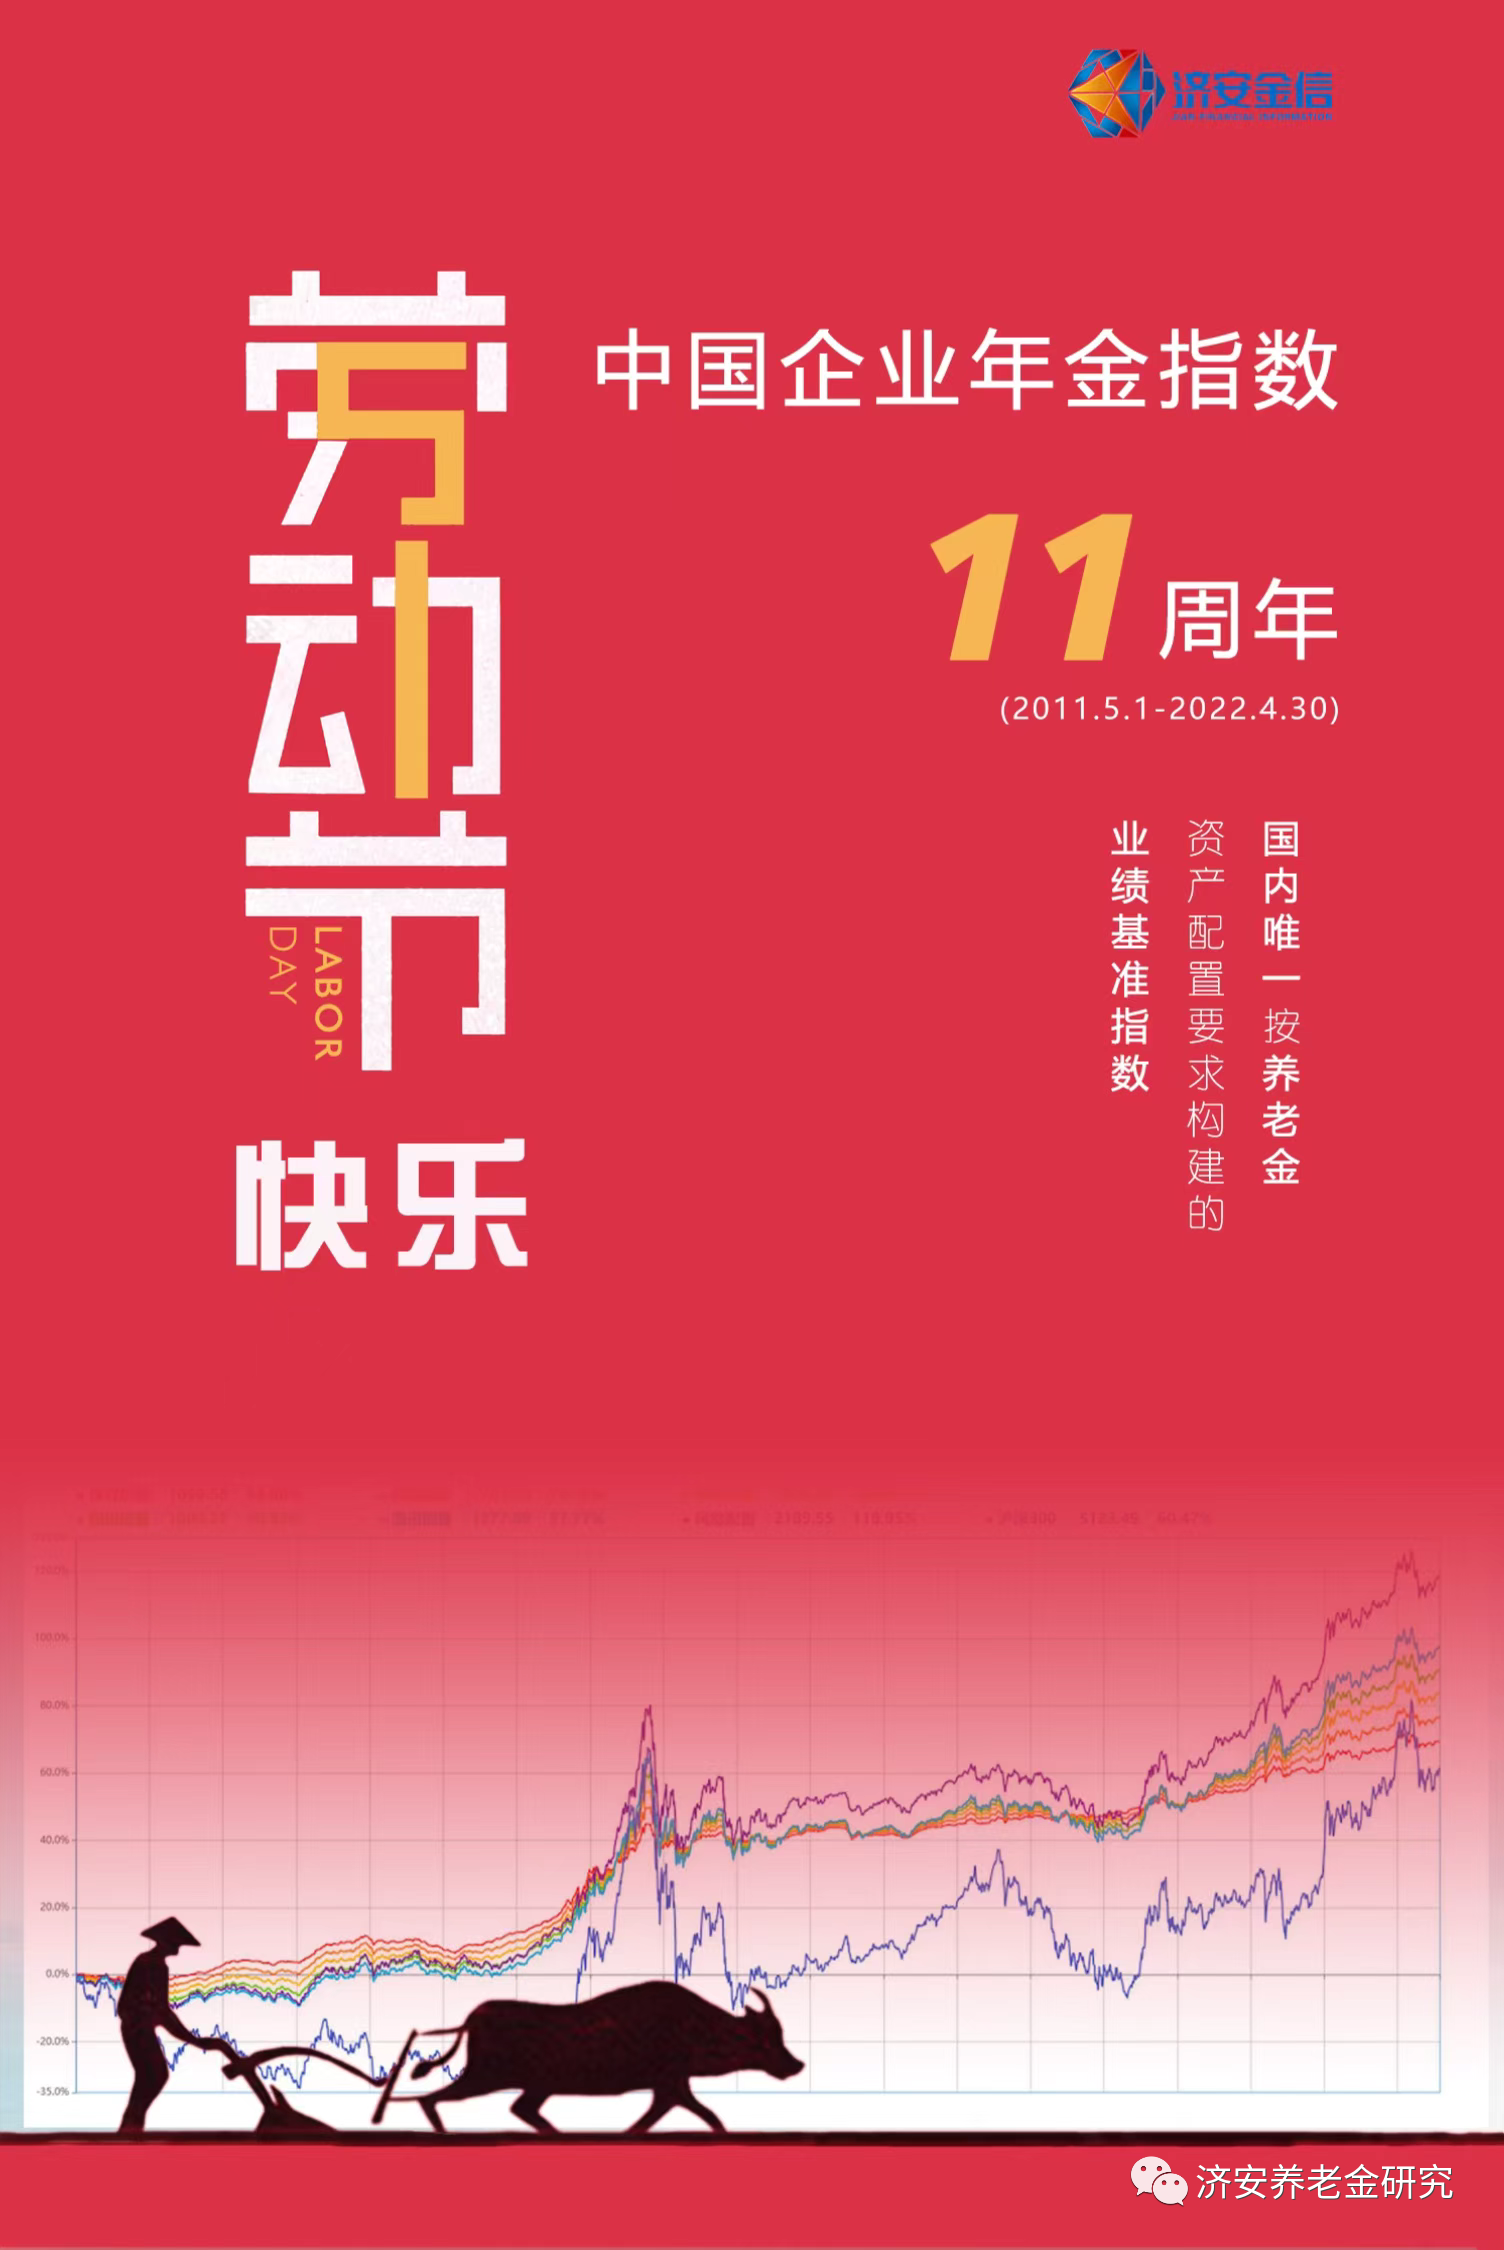 劳动节快乐\n中国企业年金指数 11周年